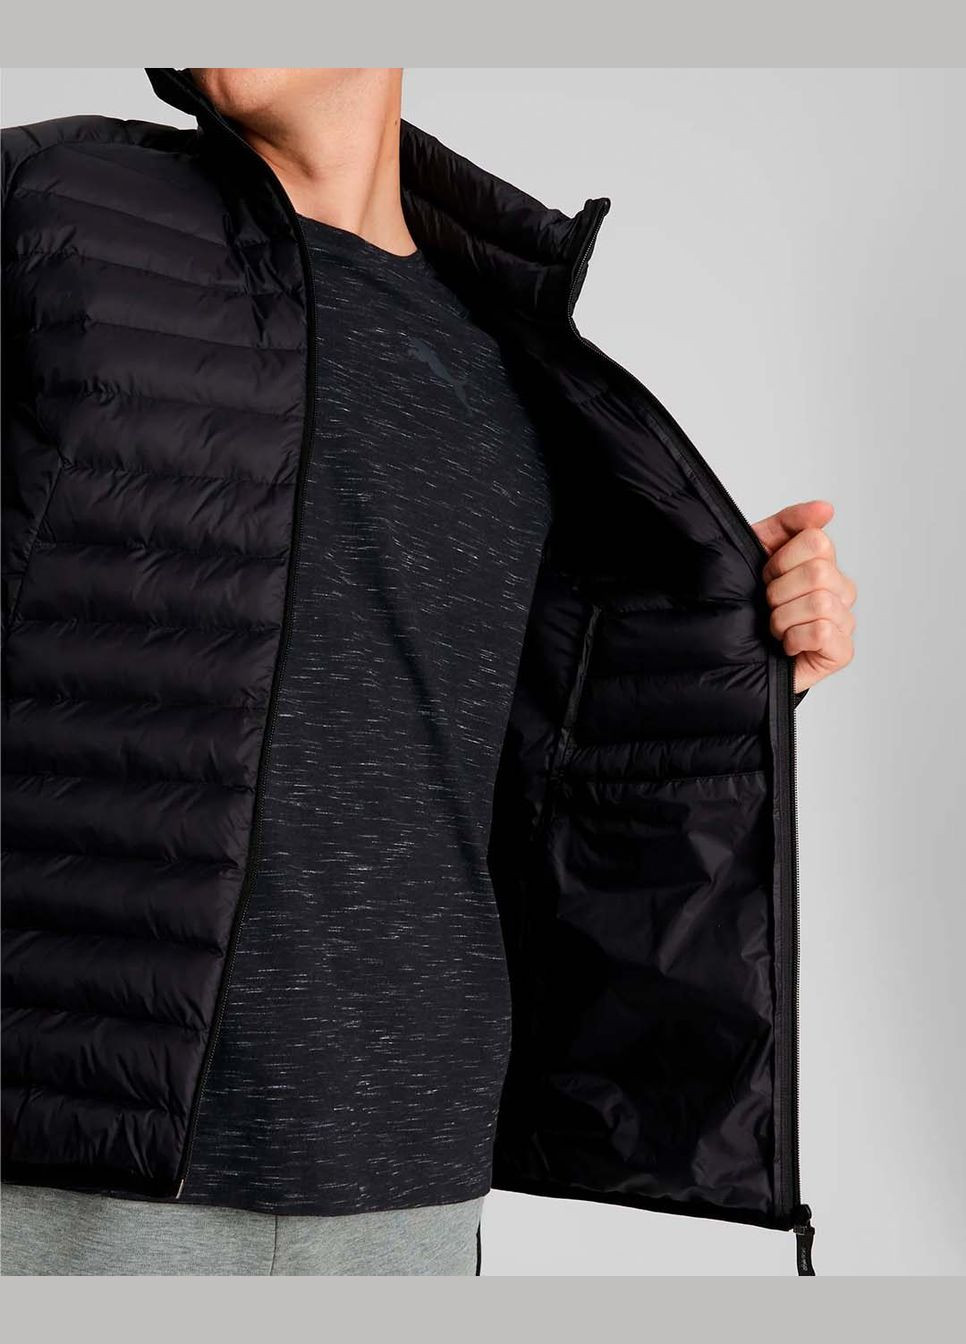 Черная демисезонная куртка мужская packlite primaloft 849356 01 весна-осень черная Puma